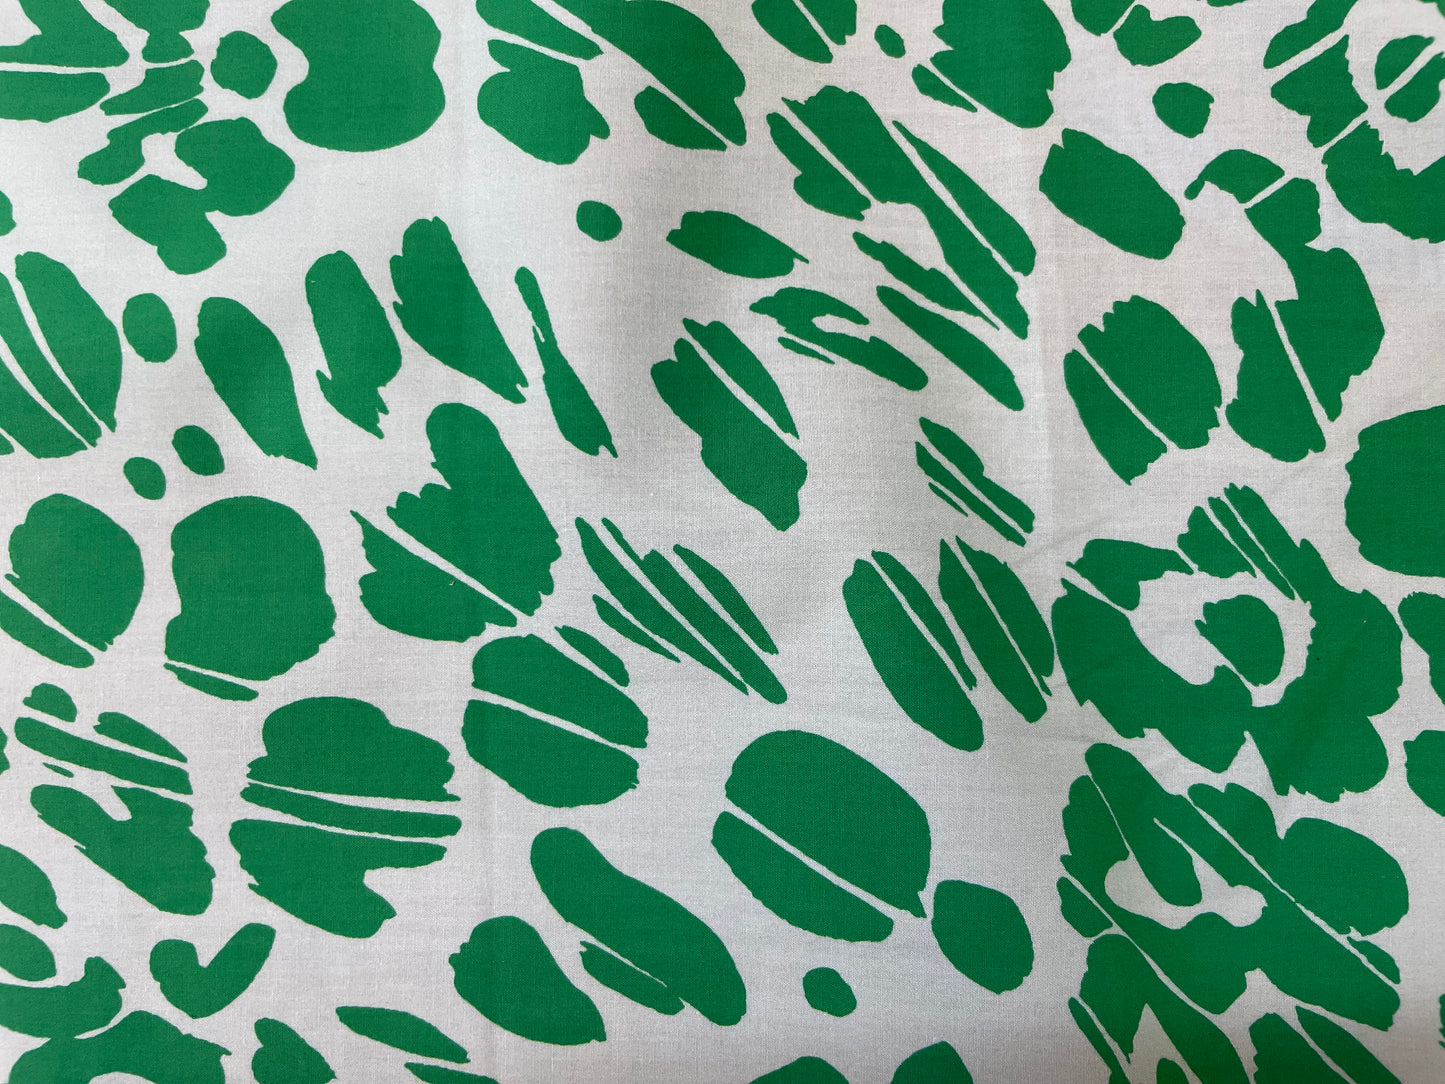 Italian Cheetah Print Cotton - Green & Blue